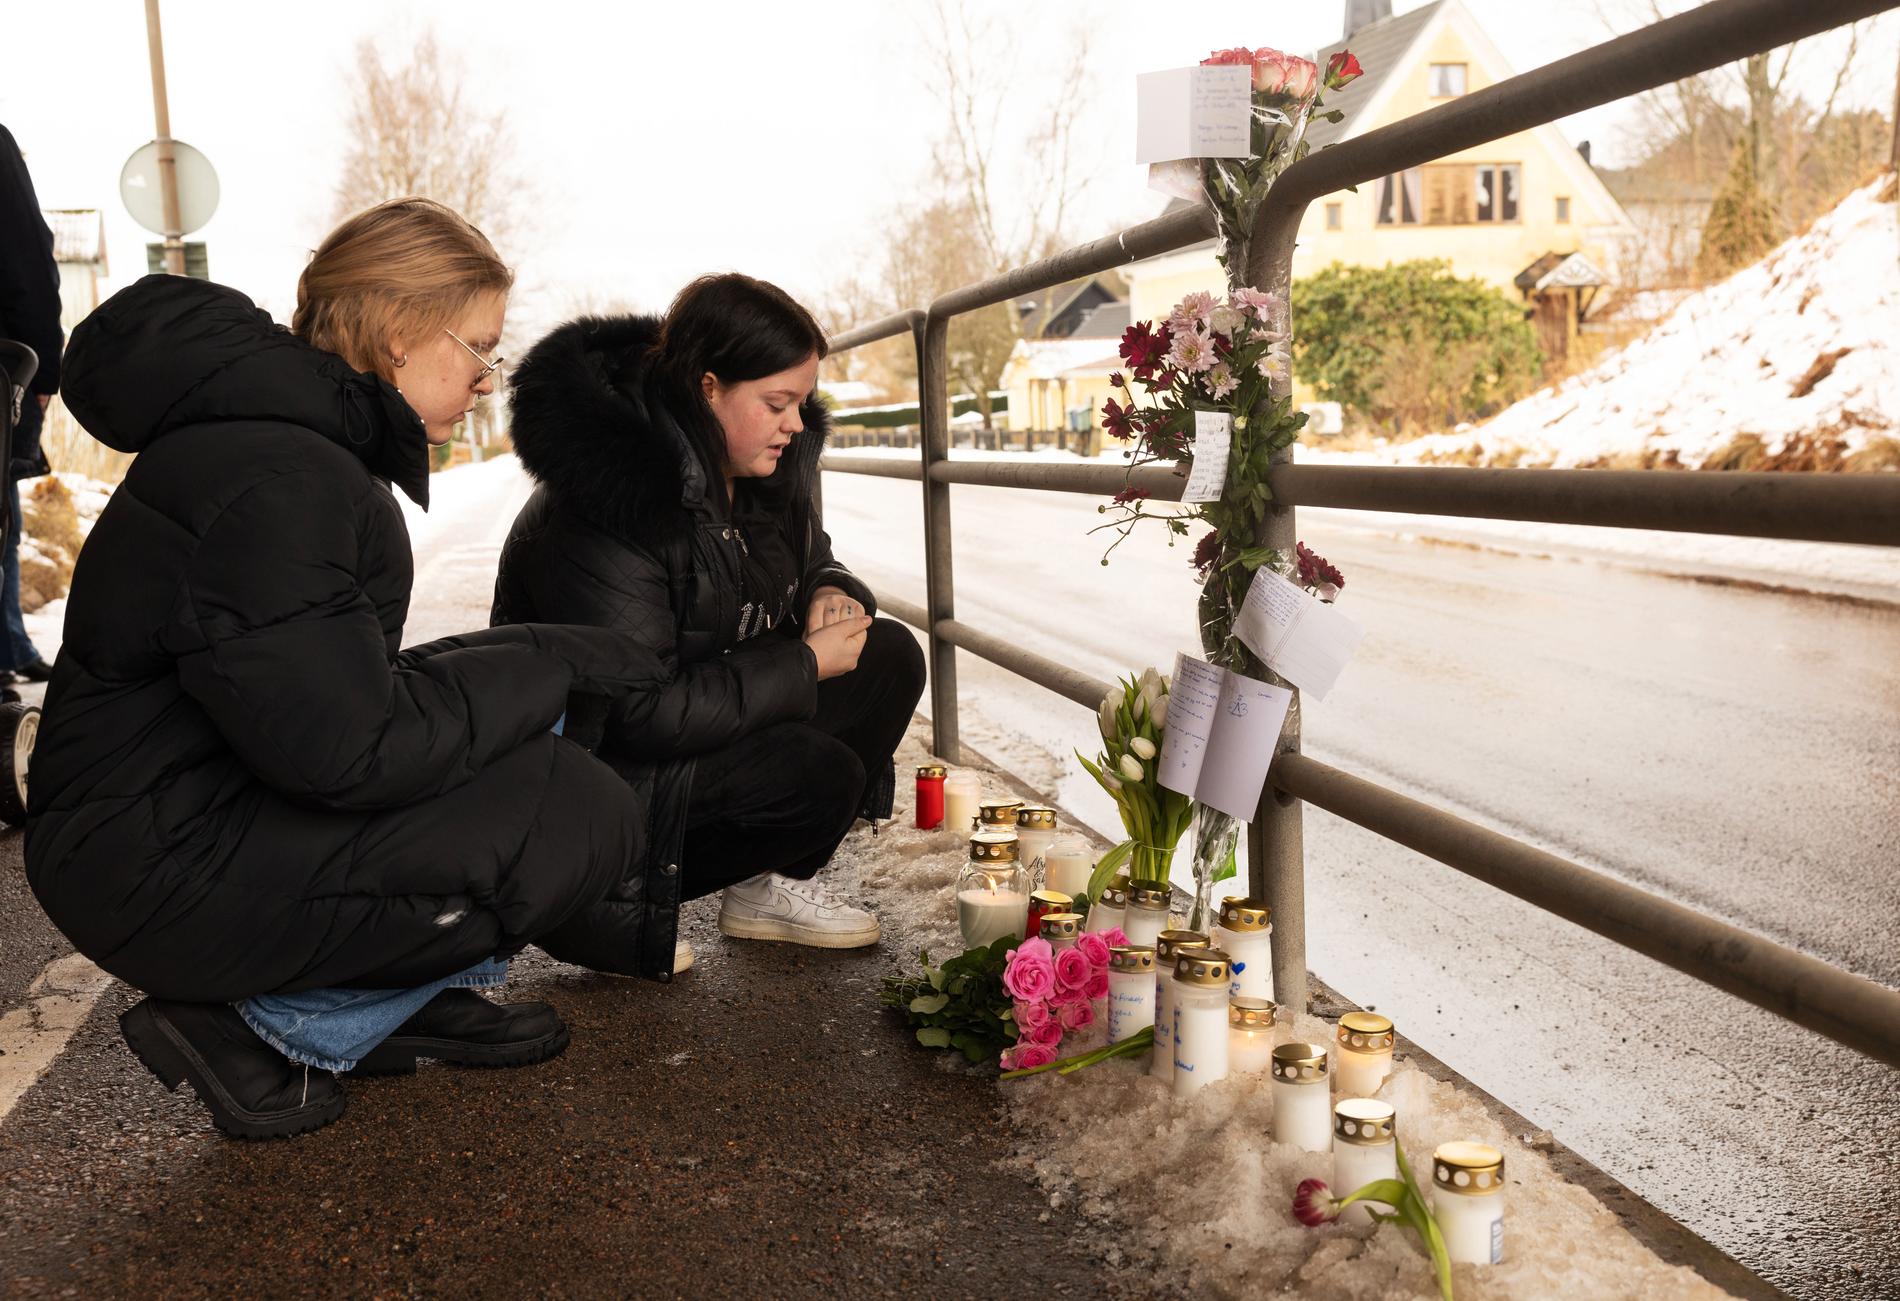 Vännerna Hanna Glanby, 22 och Patricia Nilsson, 21, sitter framför de tända ljusen och blommorna.